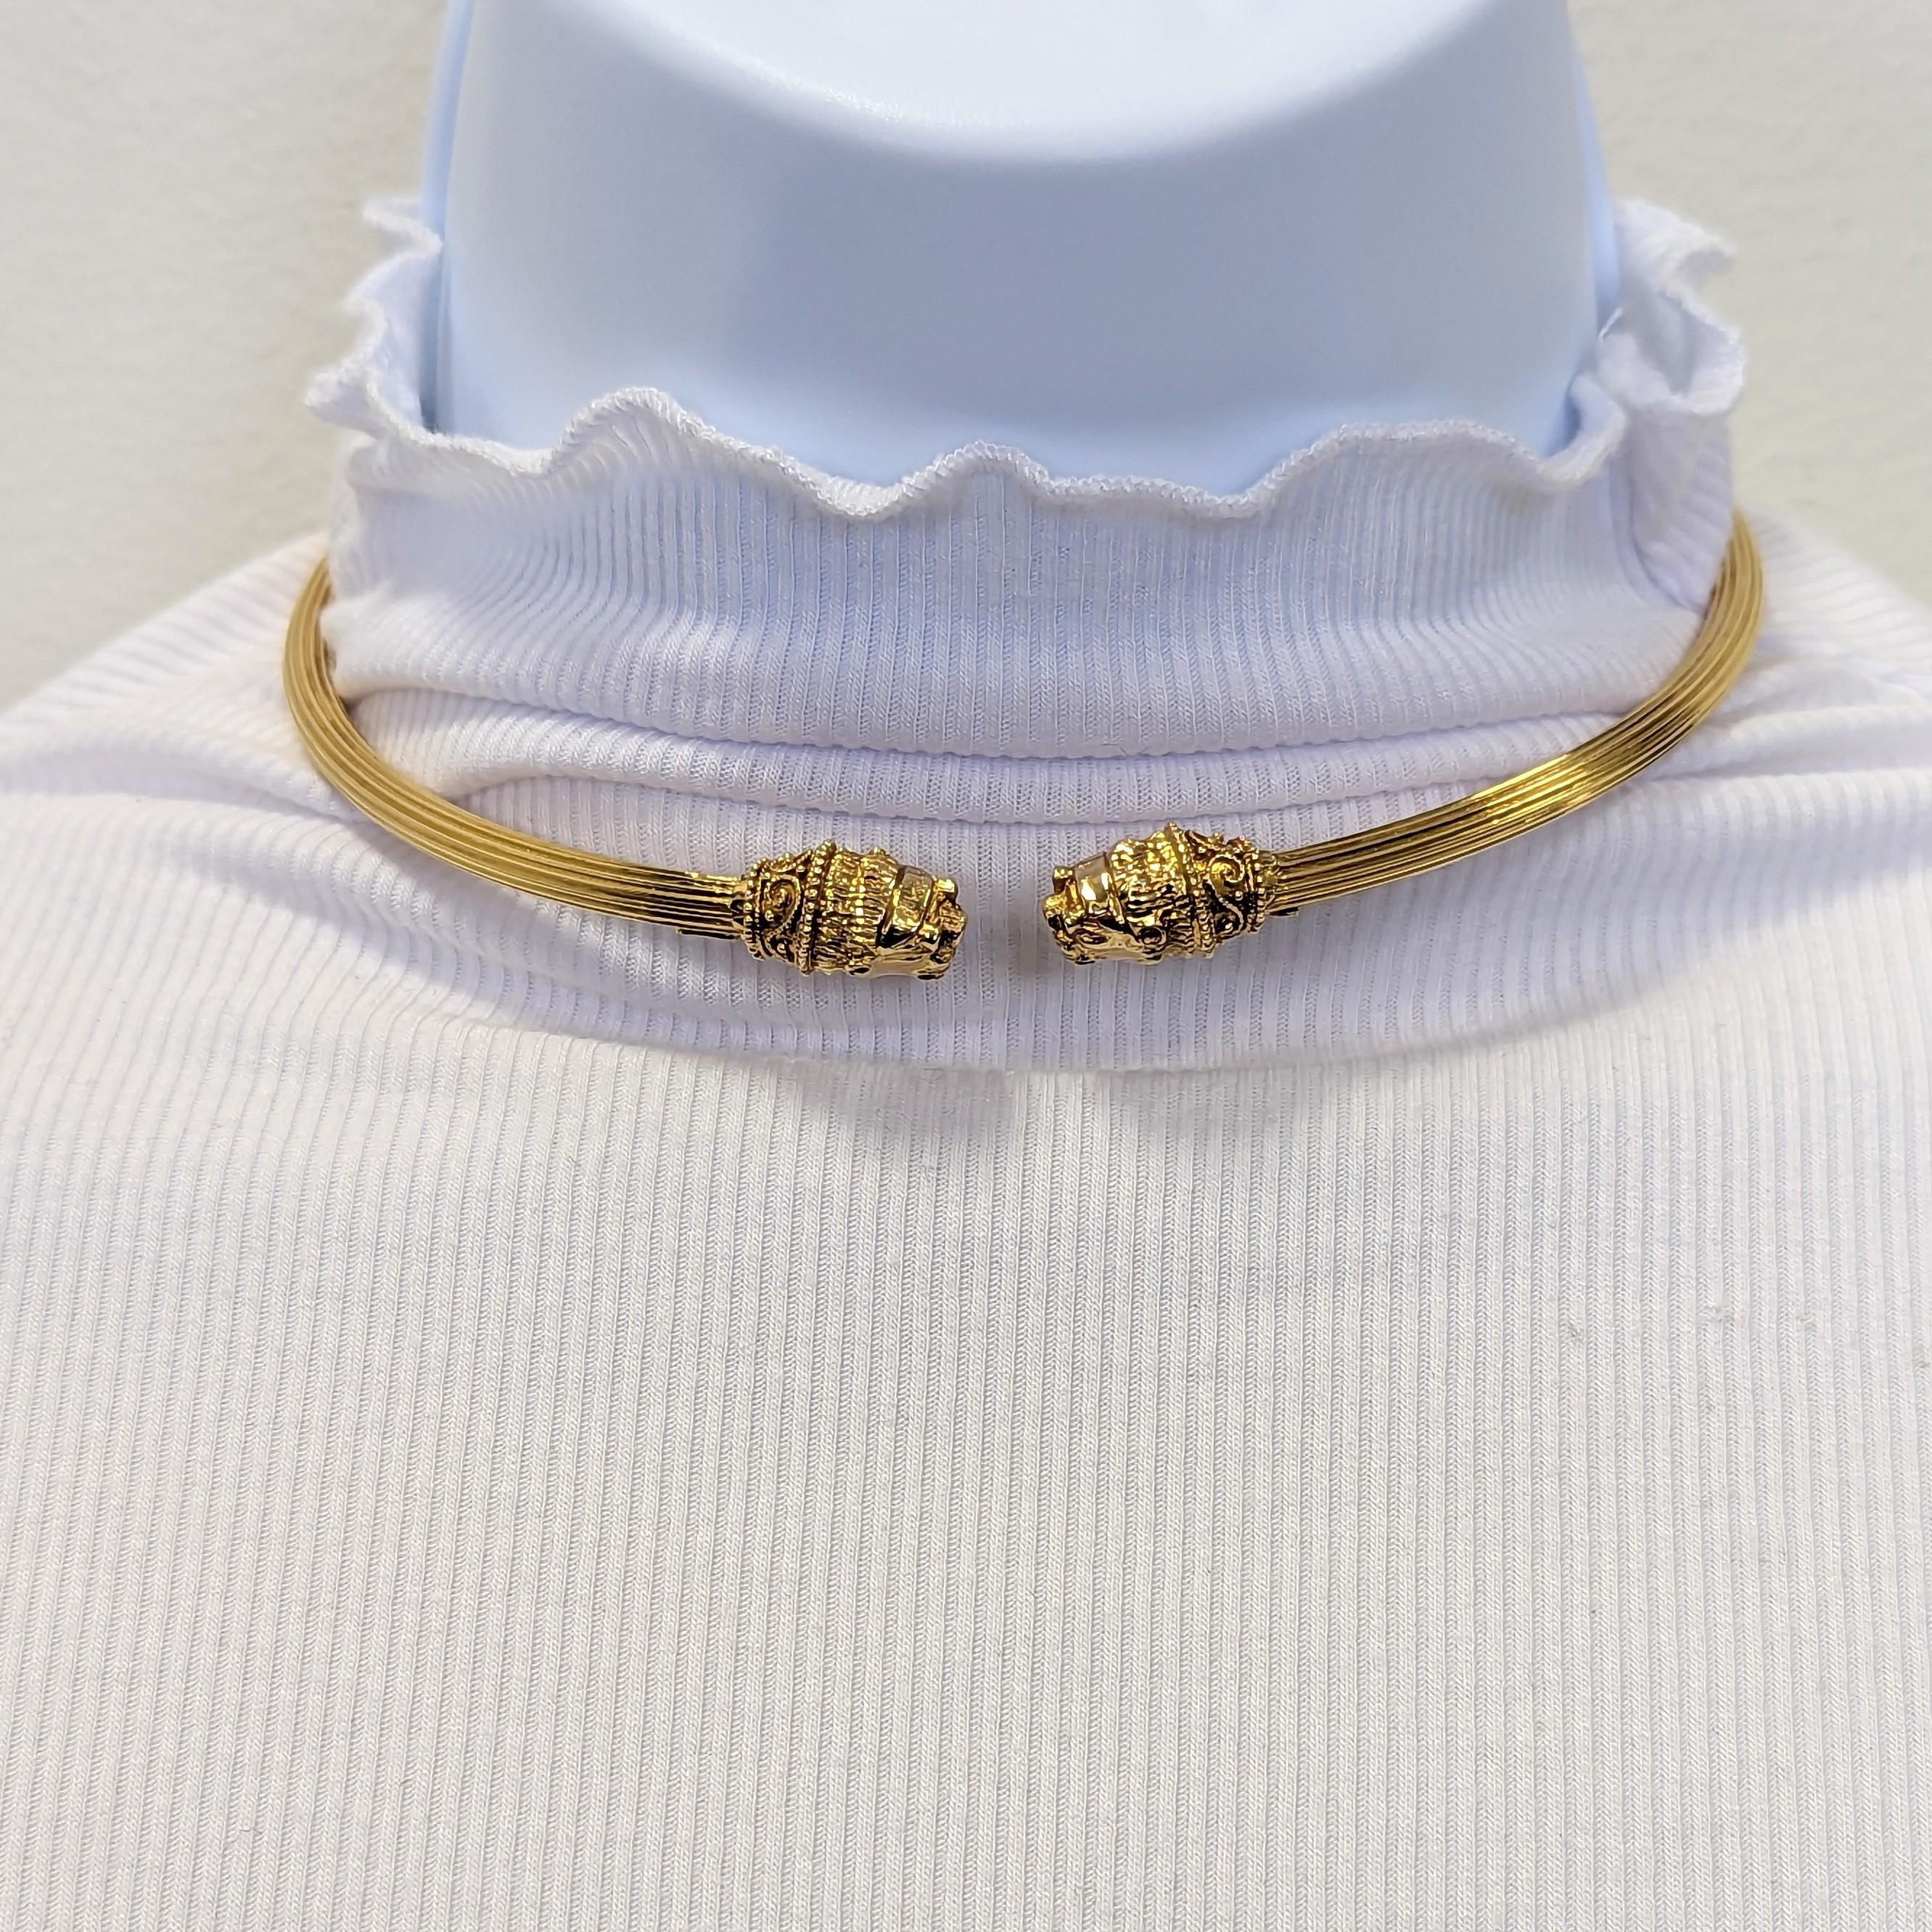 Wunderschöne Lalaounis Halskette, handgefertigt aus 18 Karat Gelbgold.  